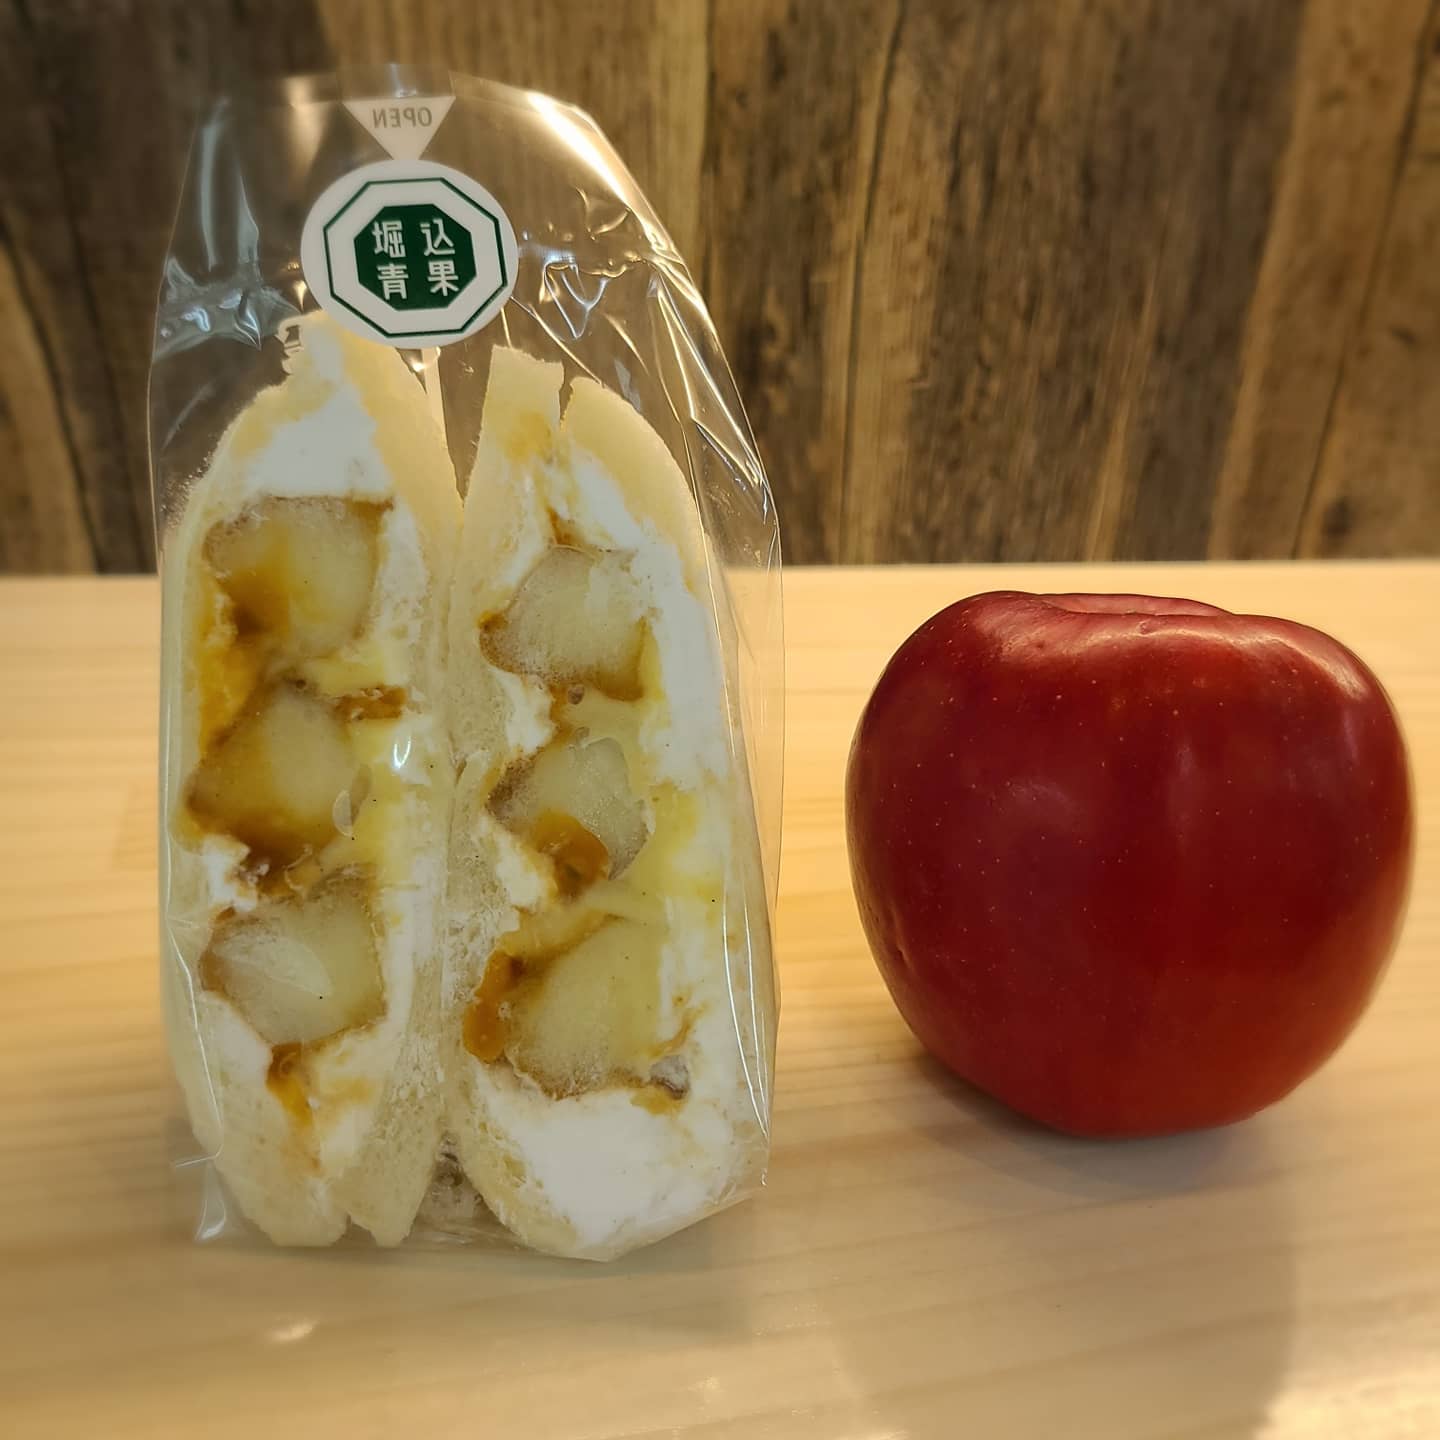 ◎新商品紹介

・りんごキャラメルカスタード

りんごをソテーしてカスタードとキャラメルソースでサンドしました️
りんごの酸味がとてもよく、ほんのり香るシナモンとマッチして後を引く美味しさです

りんごは秋田産:紅玉を使用しています

今週の土曜日に販売致します️